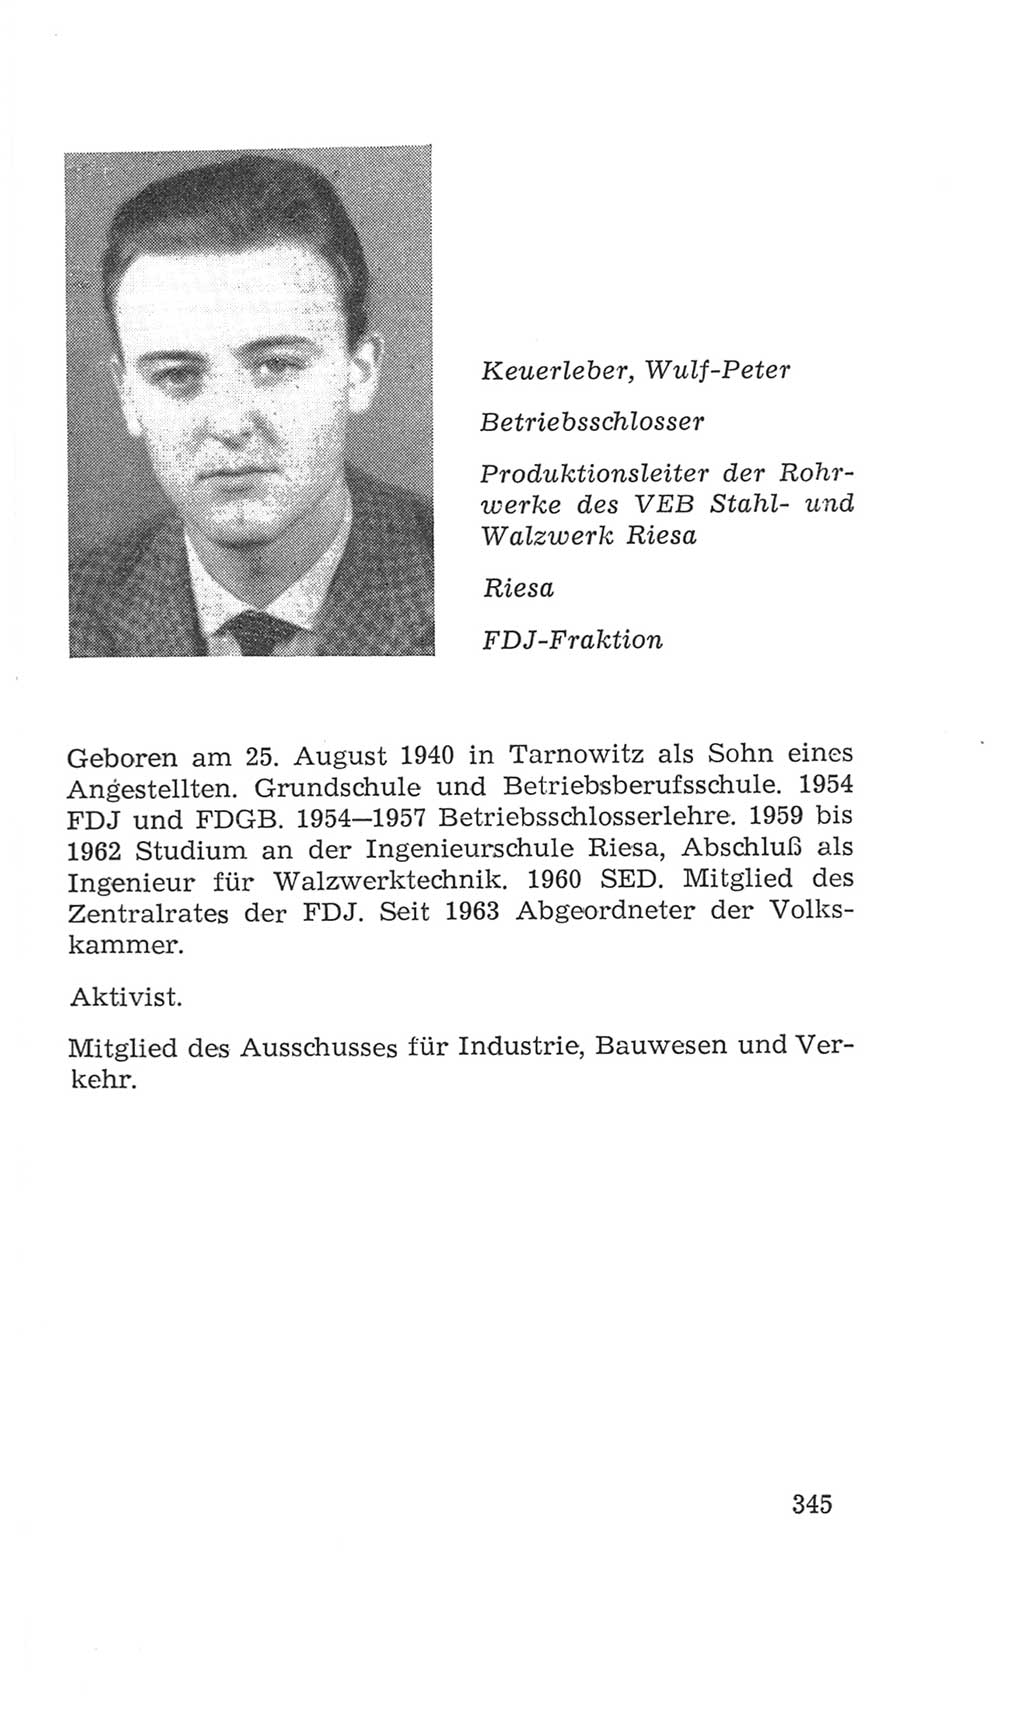 Volkskammer (VK) der Deutschen Demokratischen Republik (DDR), 4. Wahlperiode 1963-1967, Seite 345 (VK. DDR 4. WP. 1963-1967, S. 345)